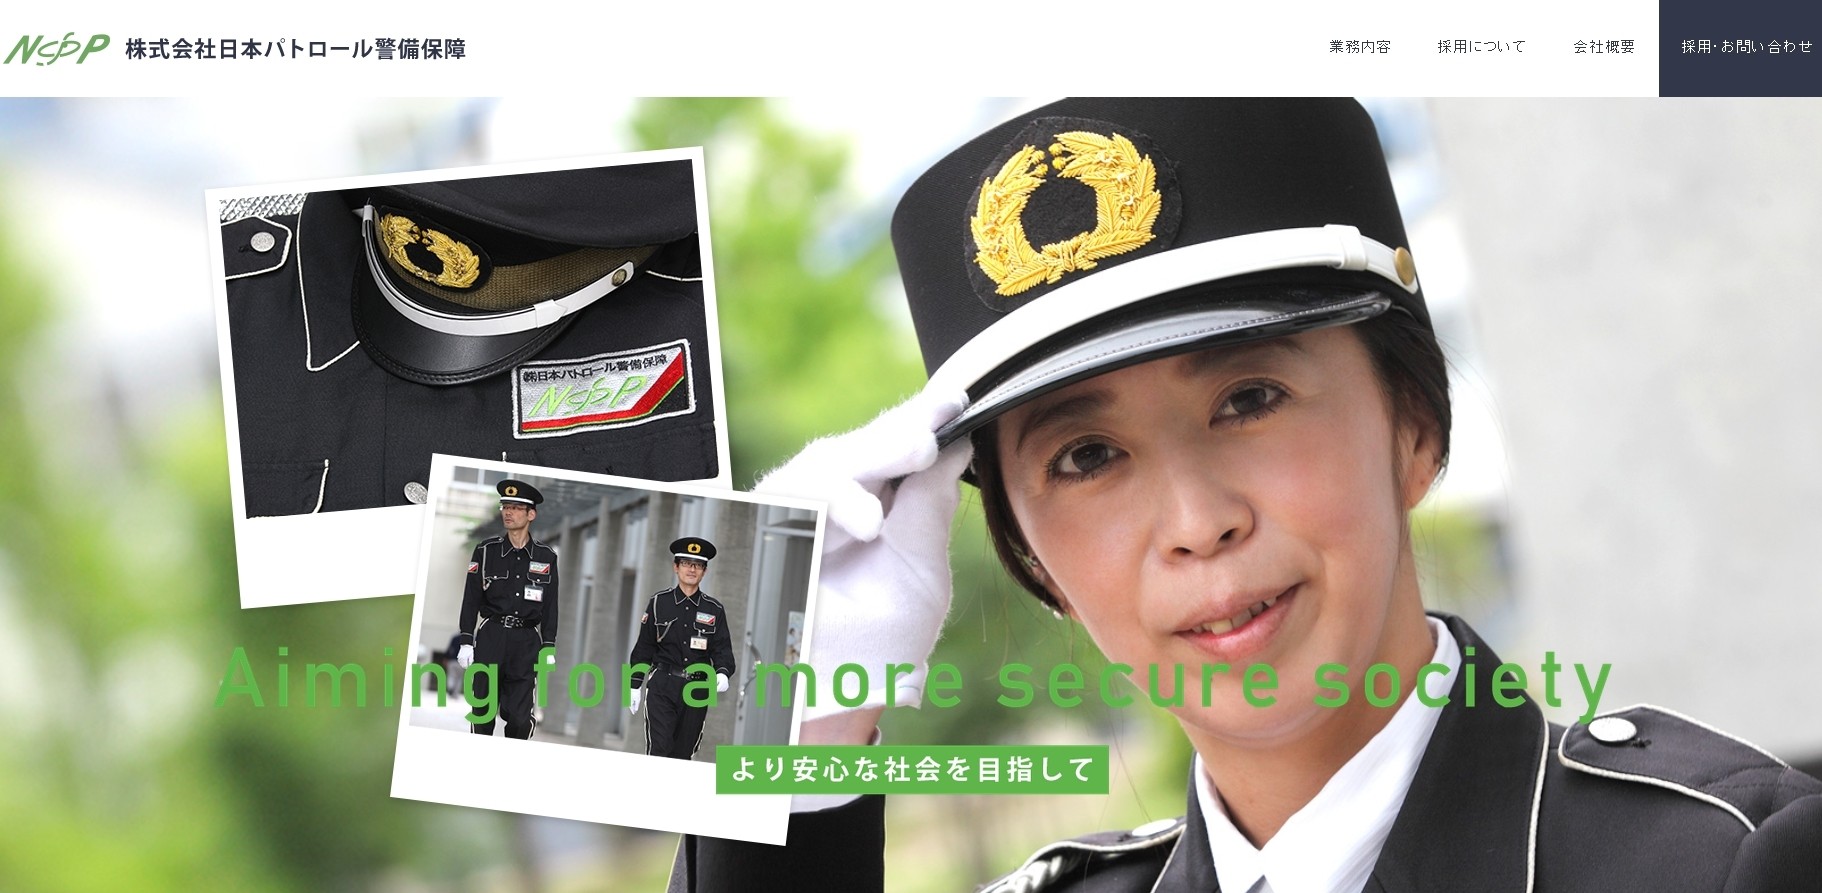 株式会社日本パトロール警備保障の株式会社日本パトロール警備保障サービス